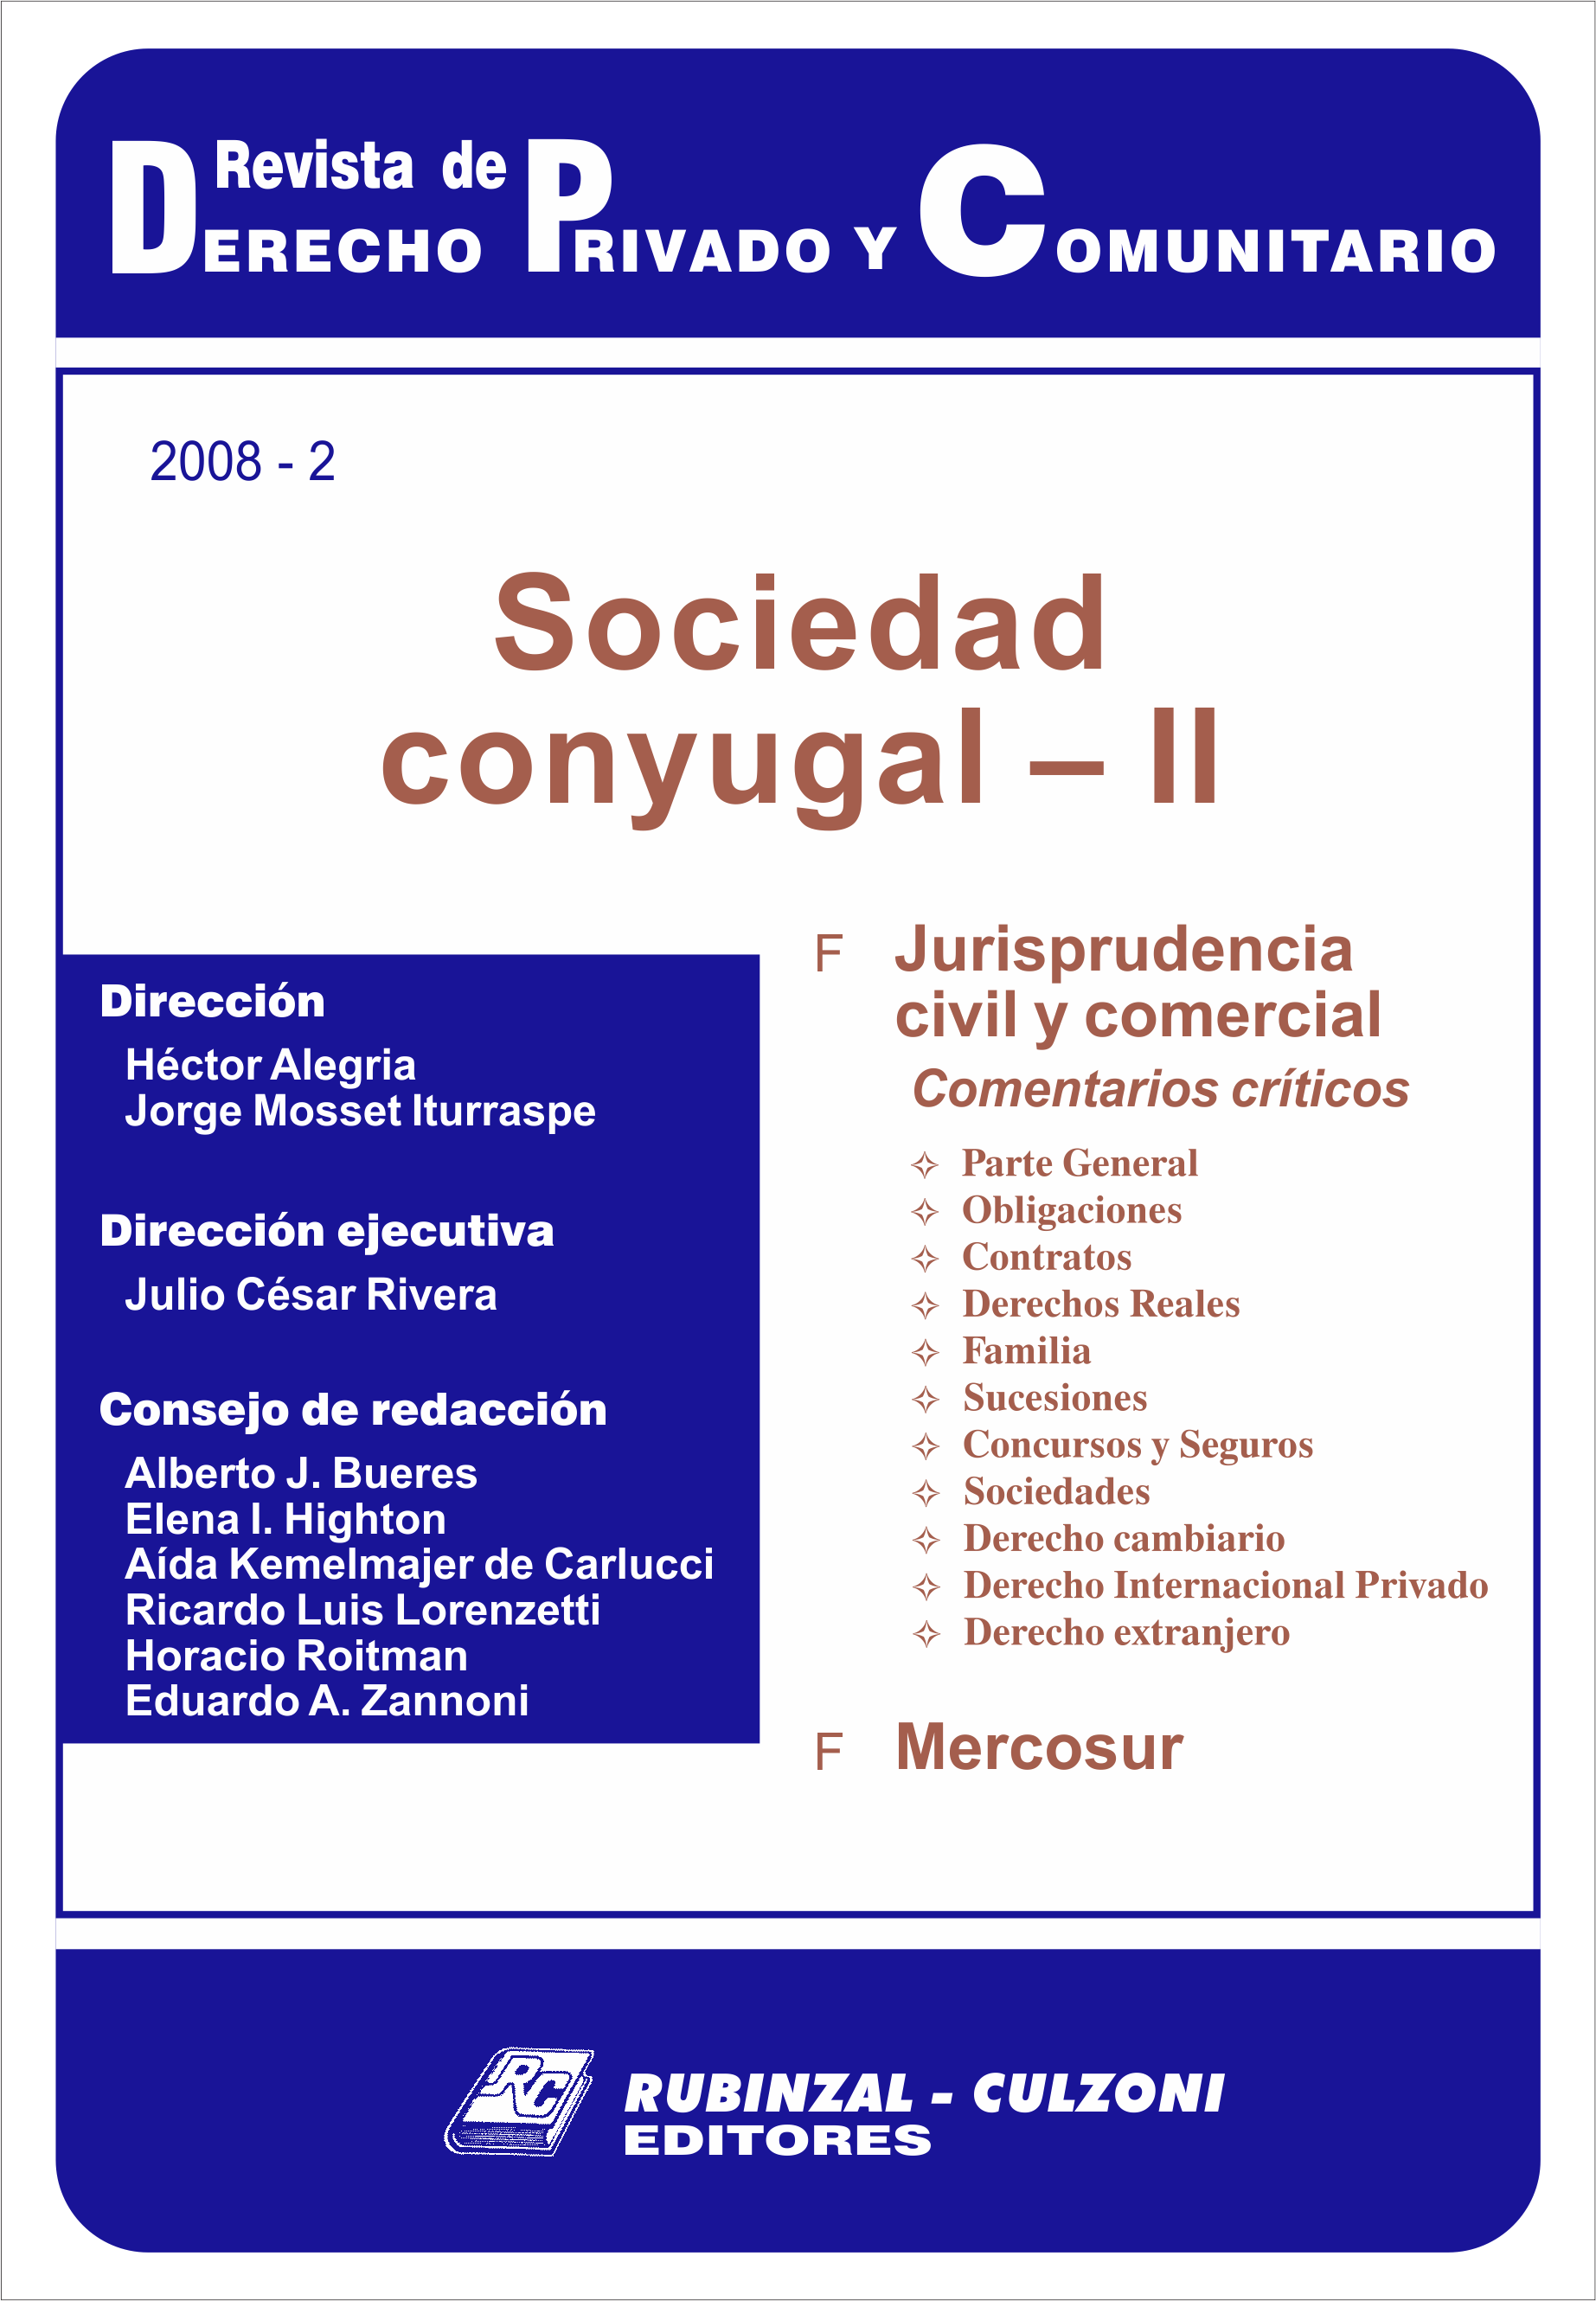 Revista de Derecho Privado y Comunitario - Sociedad conyugal - II.